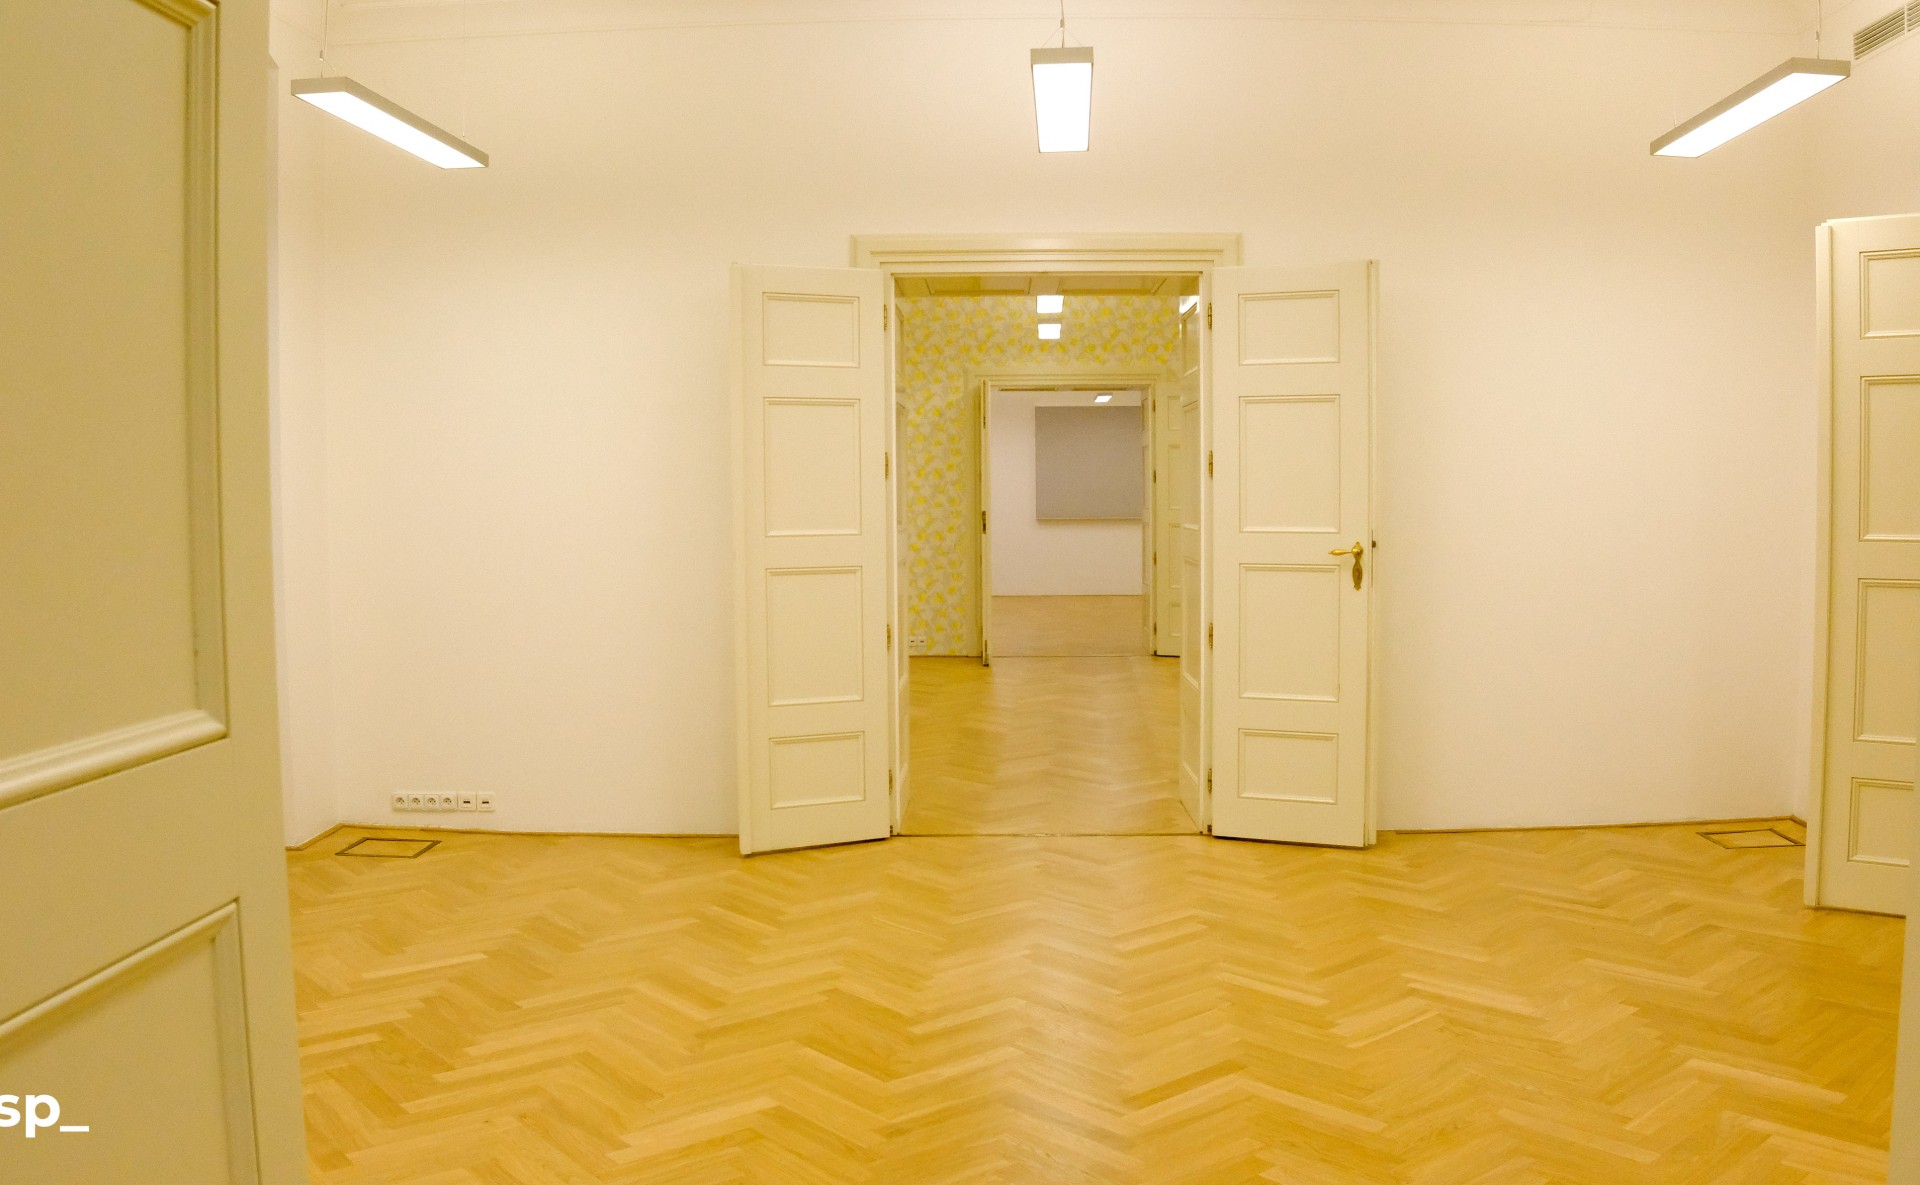 Offices for rent Prague 1 Slovanský Dům